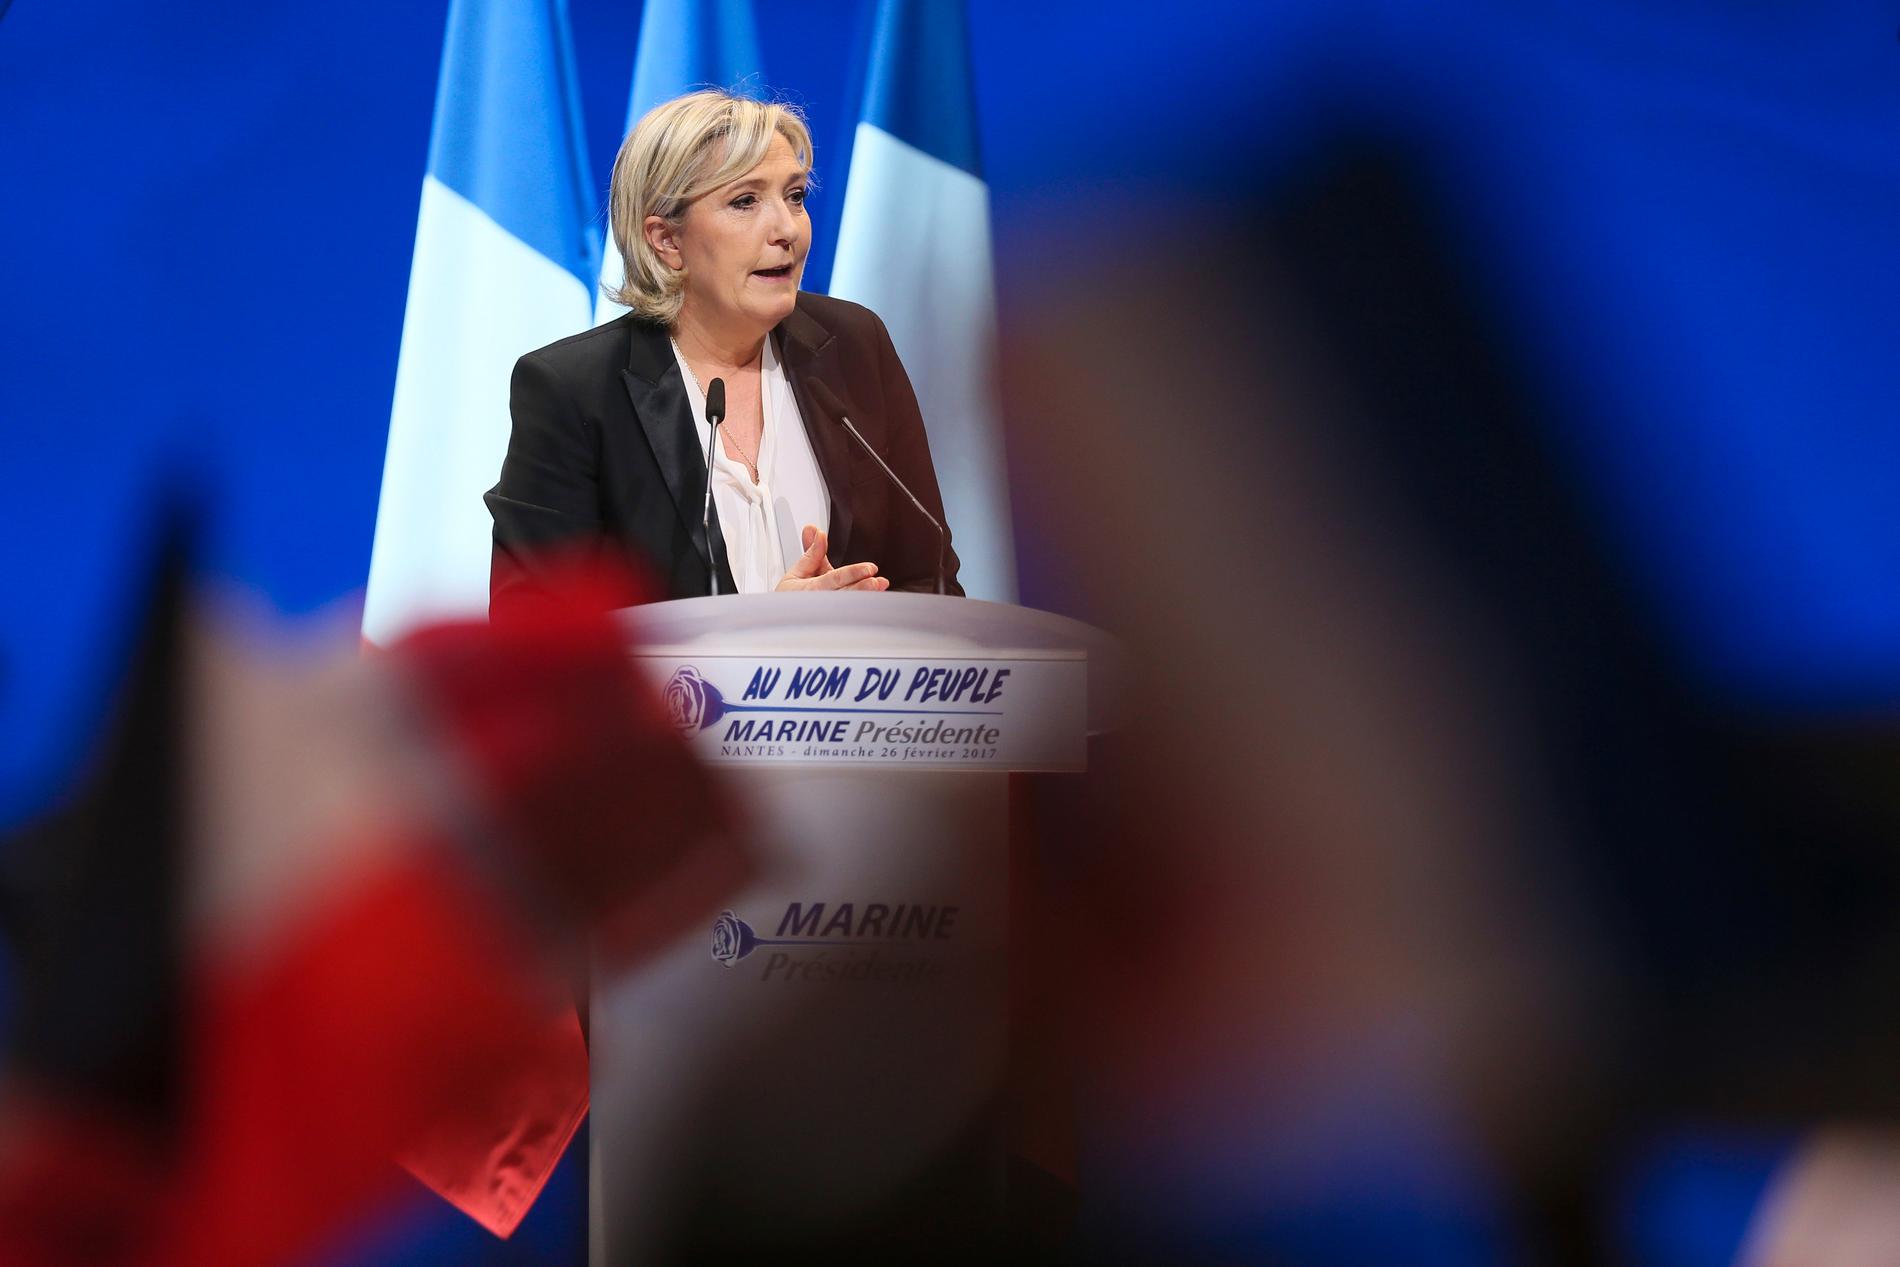 Marine Le Pen, kandidat för högerextrema Nationella fronten, talar i Nantes på söndagen.